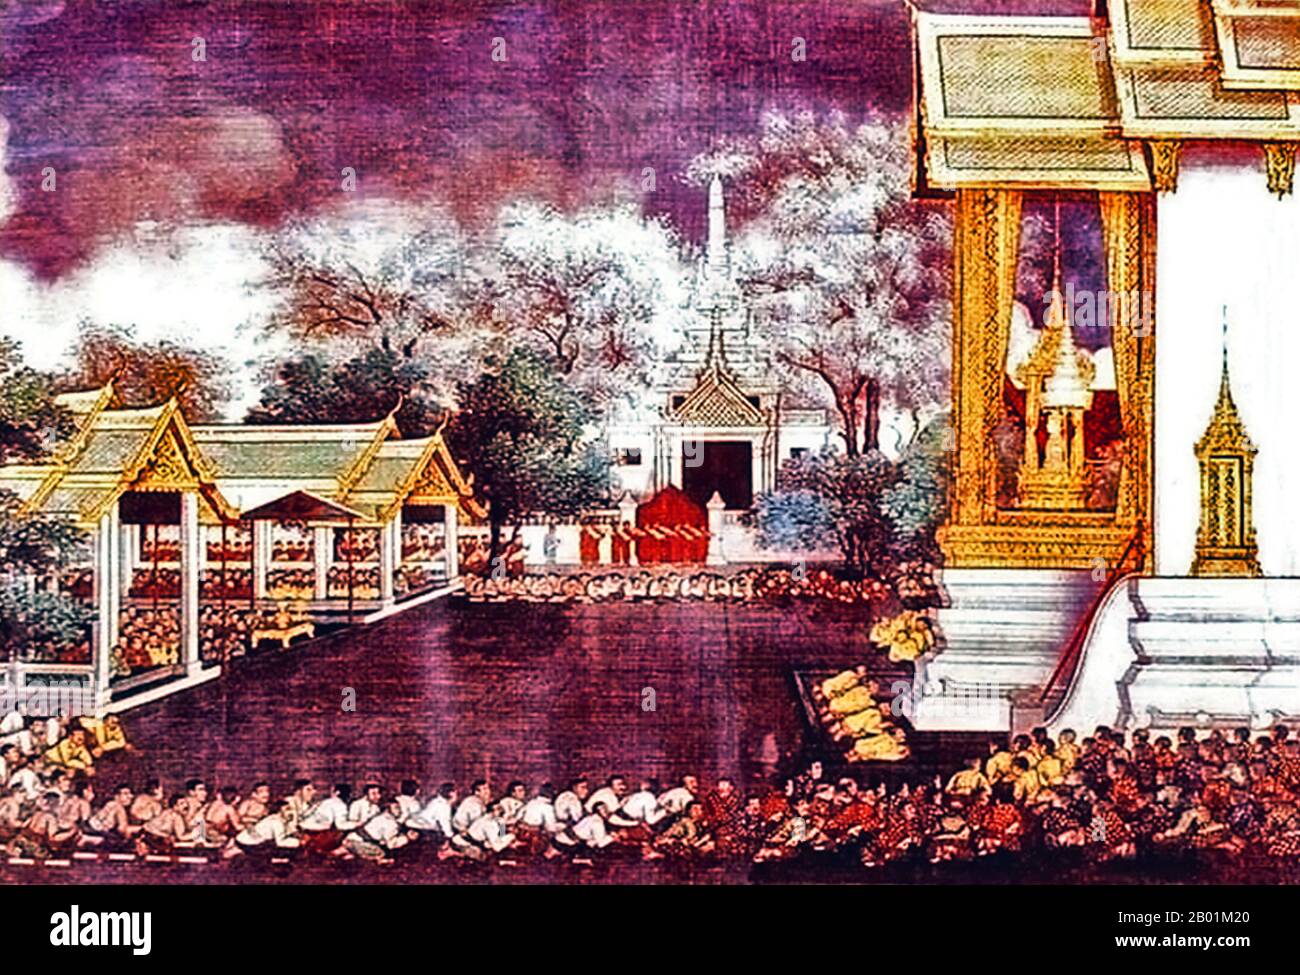 Thaïlande : Taksin le Grand (17 avril 1734 - 7 avril 1782) intronisé roi du Siam, Thonburi, 28 décembre 1768. Murale, 18e siècle. Taksin (Somdet Phra Chao Taksin Maharat) était le seul roi du Royaume de Thonburi. Il est grandement vénéré par le peuple thaïlandais pour son leadership dans la libération du Siam de l'occupation birmane après la deuxième chute d'Ayutthaya en 1767, et l'unification ultérieure du Siam après sa chute sous divers seigneurs de guerre. Il établit la ville de Thonburi comme la nouvelle capitale, car la ville Ayutthaya avait été presque complètement détruite par les envahisseurs. Banque D'Images